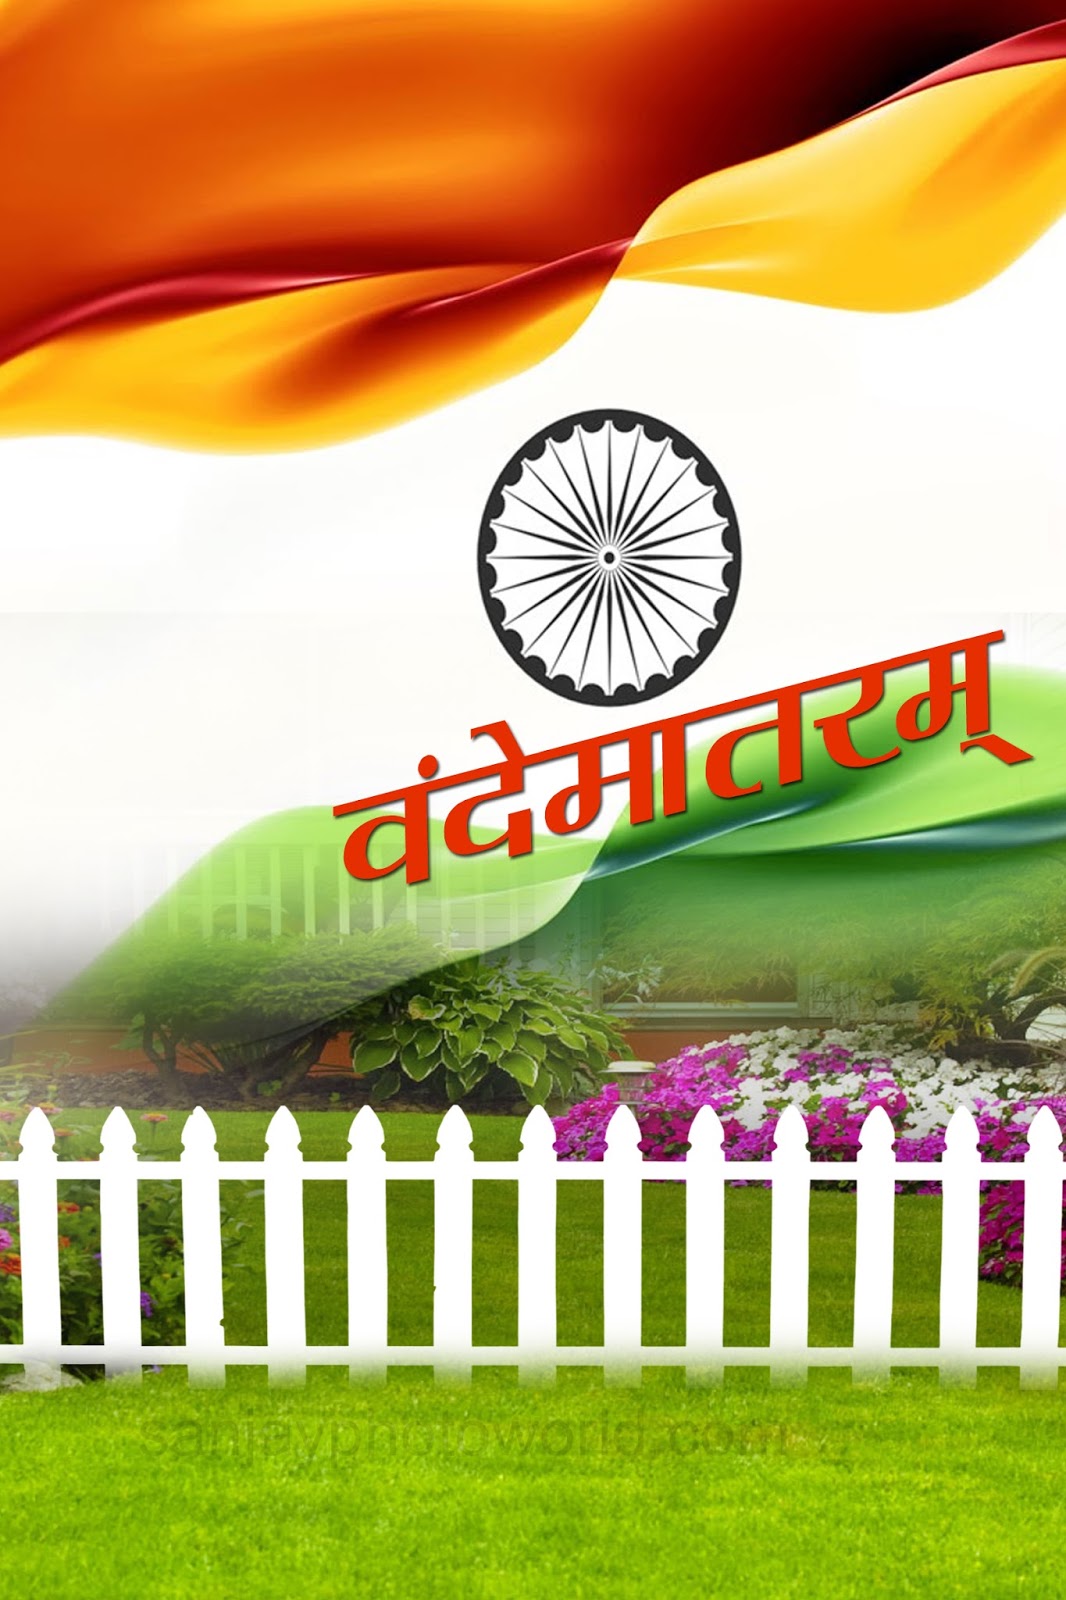 Sanjay Photo World Independence Day India 2015 Studio Backgrounds